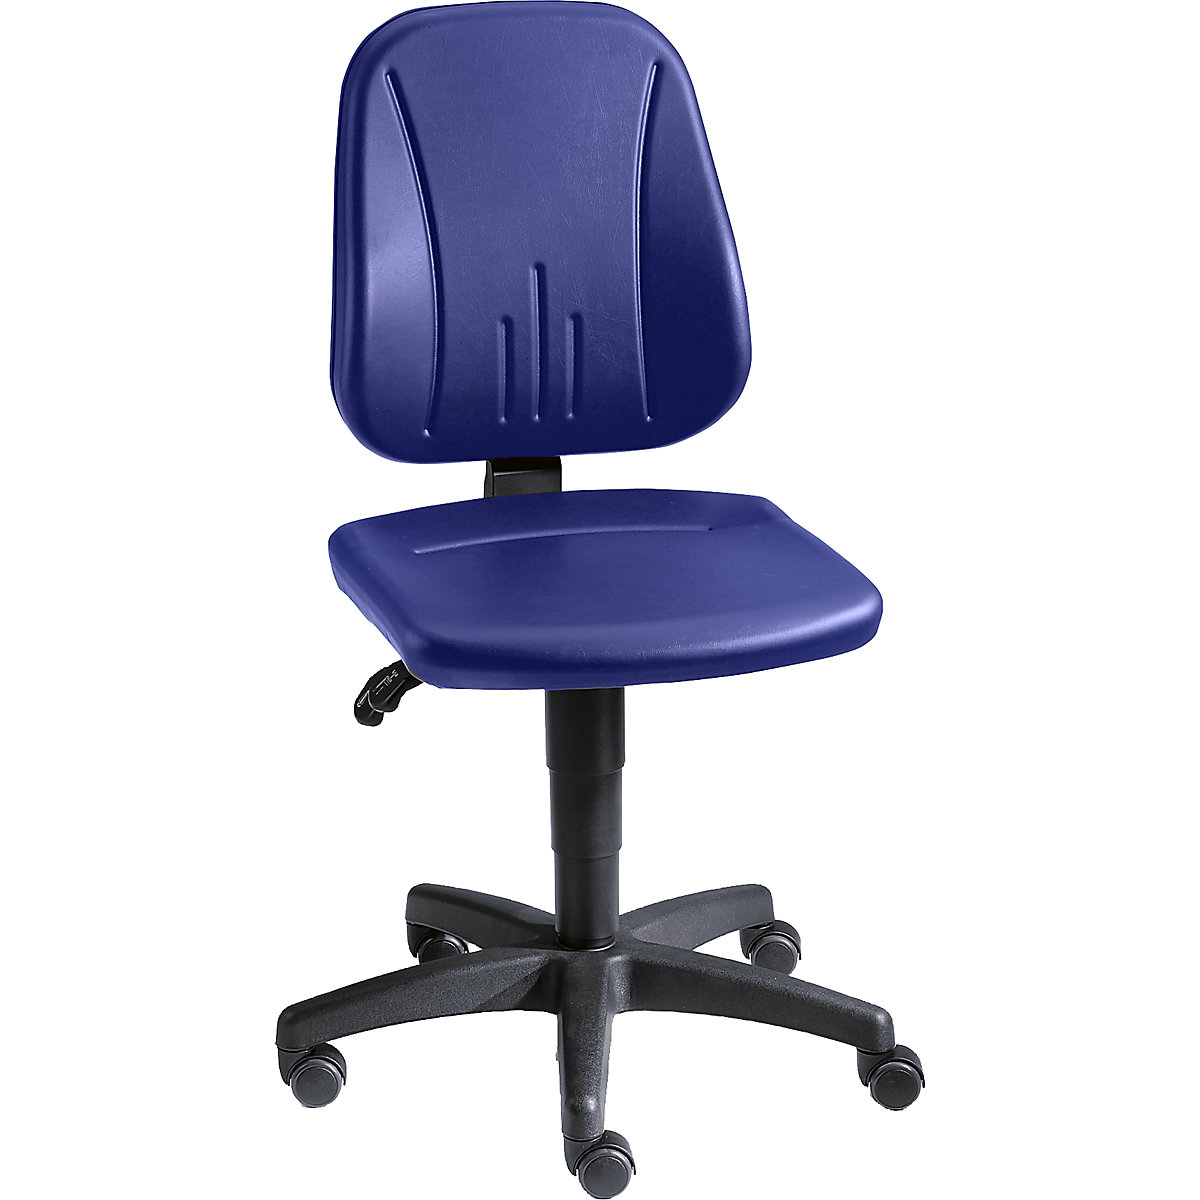 Pracovní otočná židle – bimos, s přestavováním výšky plynovým pístem, koženkový potah, modrá, s kolečky-14